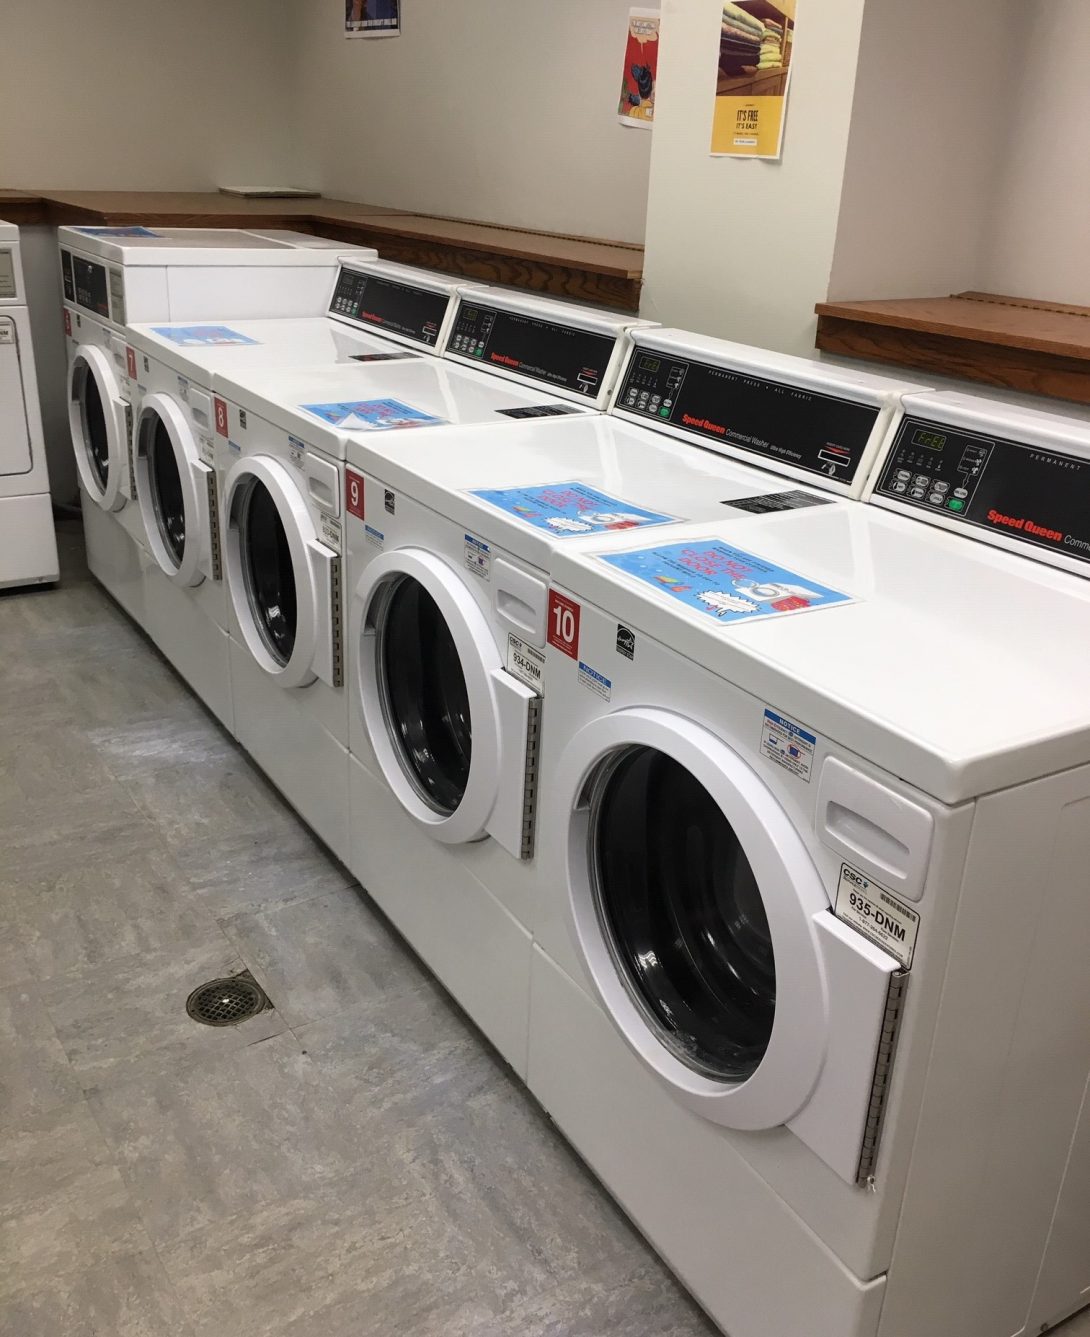 Set of washing machines